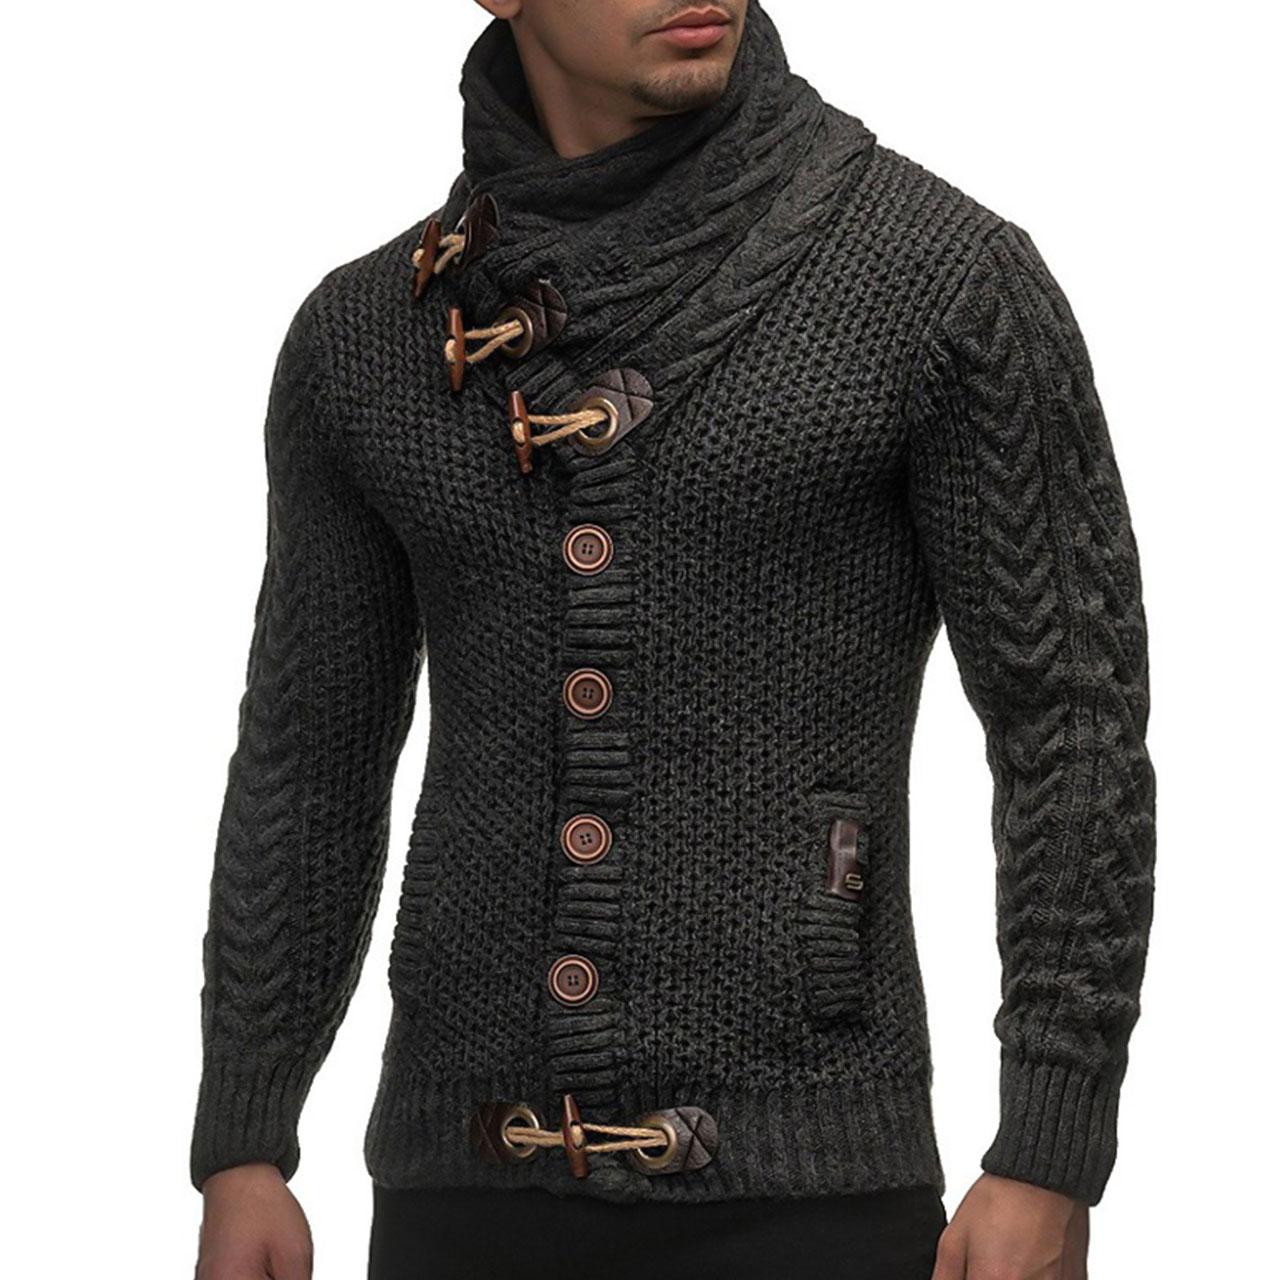 CBTLVSN Men Fashion Slim Mock Neck Solid Long-Sleeved Knit Sweater 